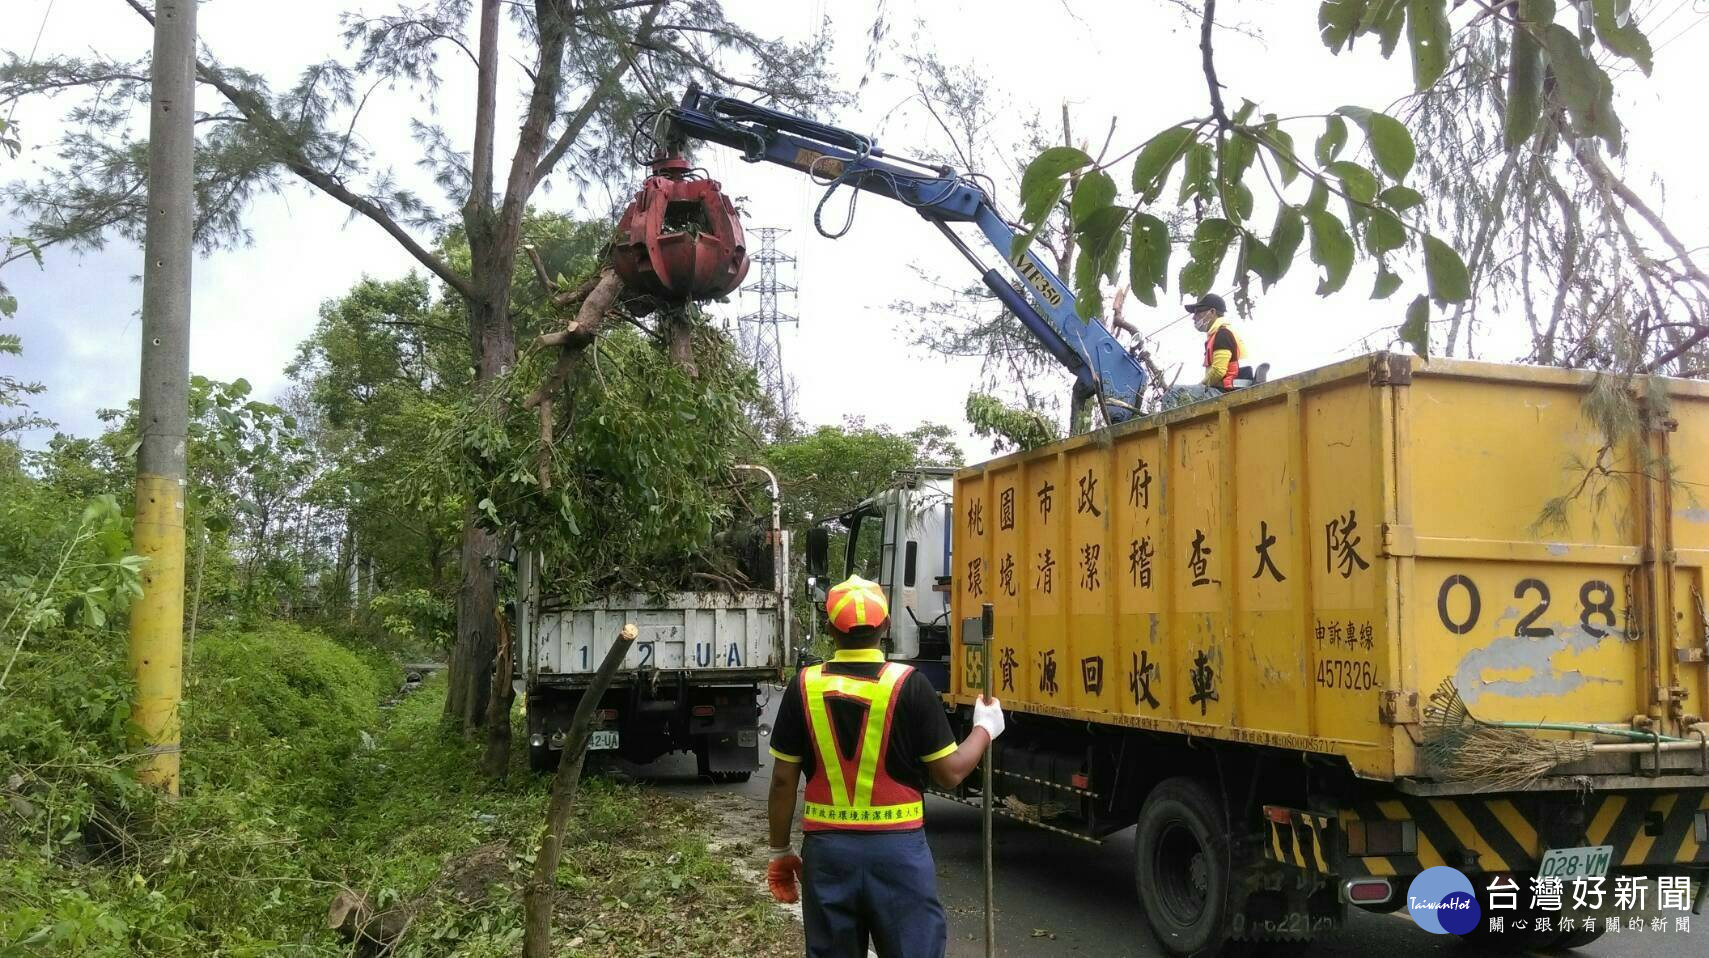 除了垃圾清運與市容整理以外，每逢颱風期間，若有路樹倒塌或招牌、圍籬掉落，也都仰賴清潔隊來排除。